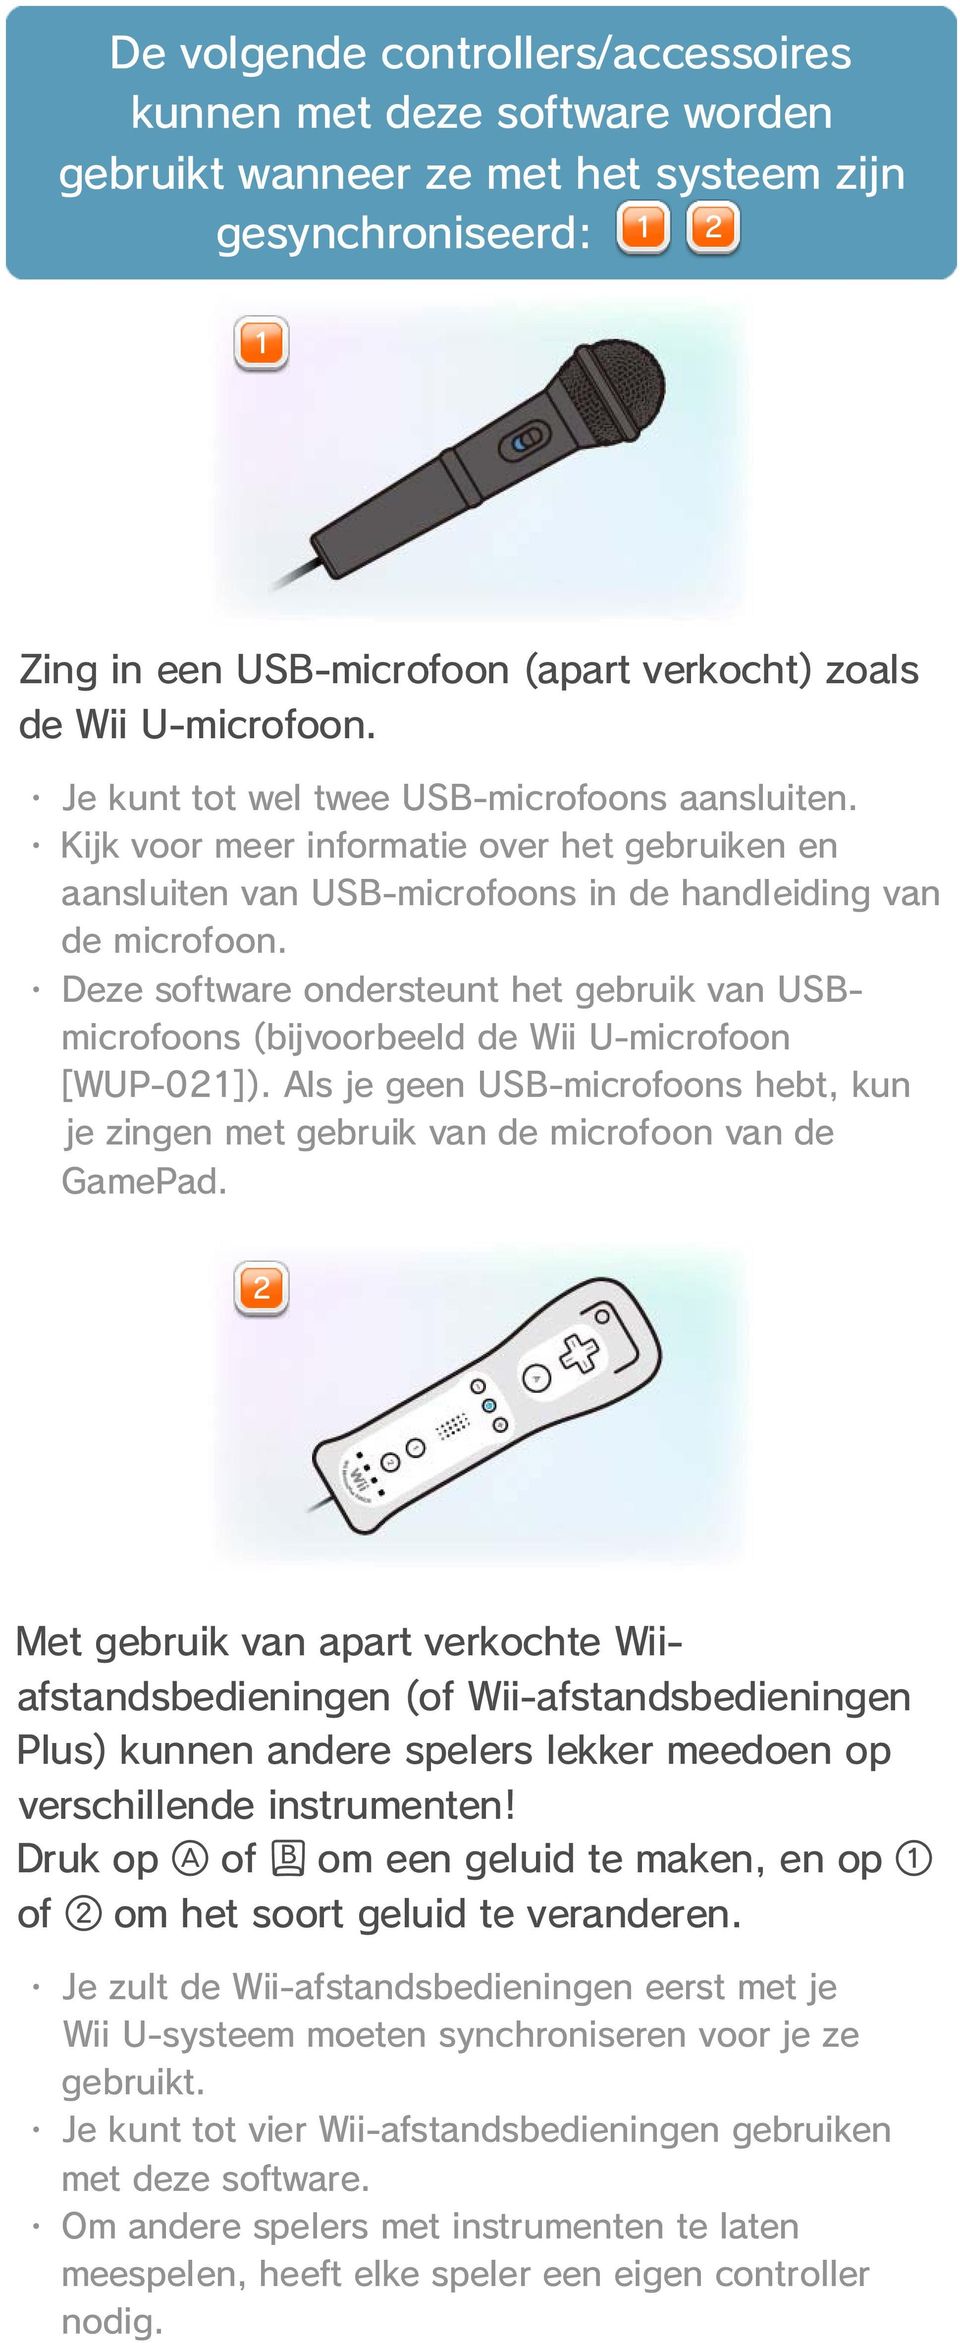 Deze software ondersteunt het gebruik van USBmicrofoons (bijvoorbeeld de Wii U-microfoon [WUP-021]). Als je geen USB-microfoons hebt, kun je zingen met gebruik van de microfoon van de GamePad.